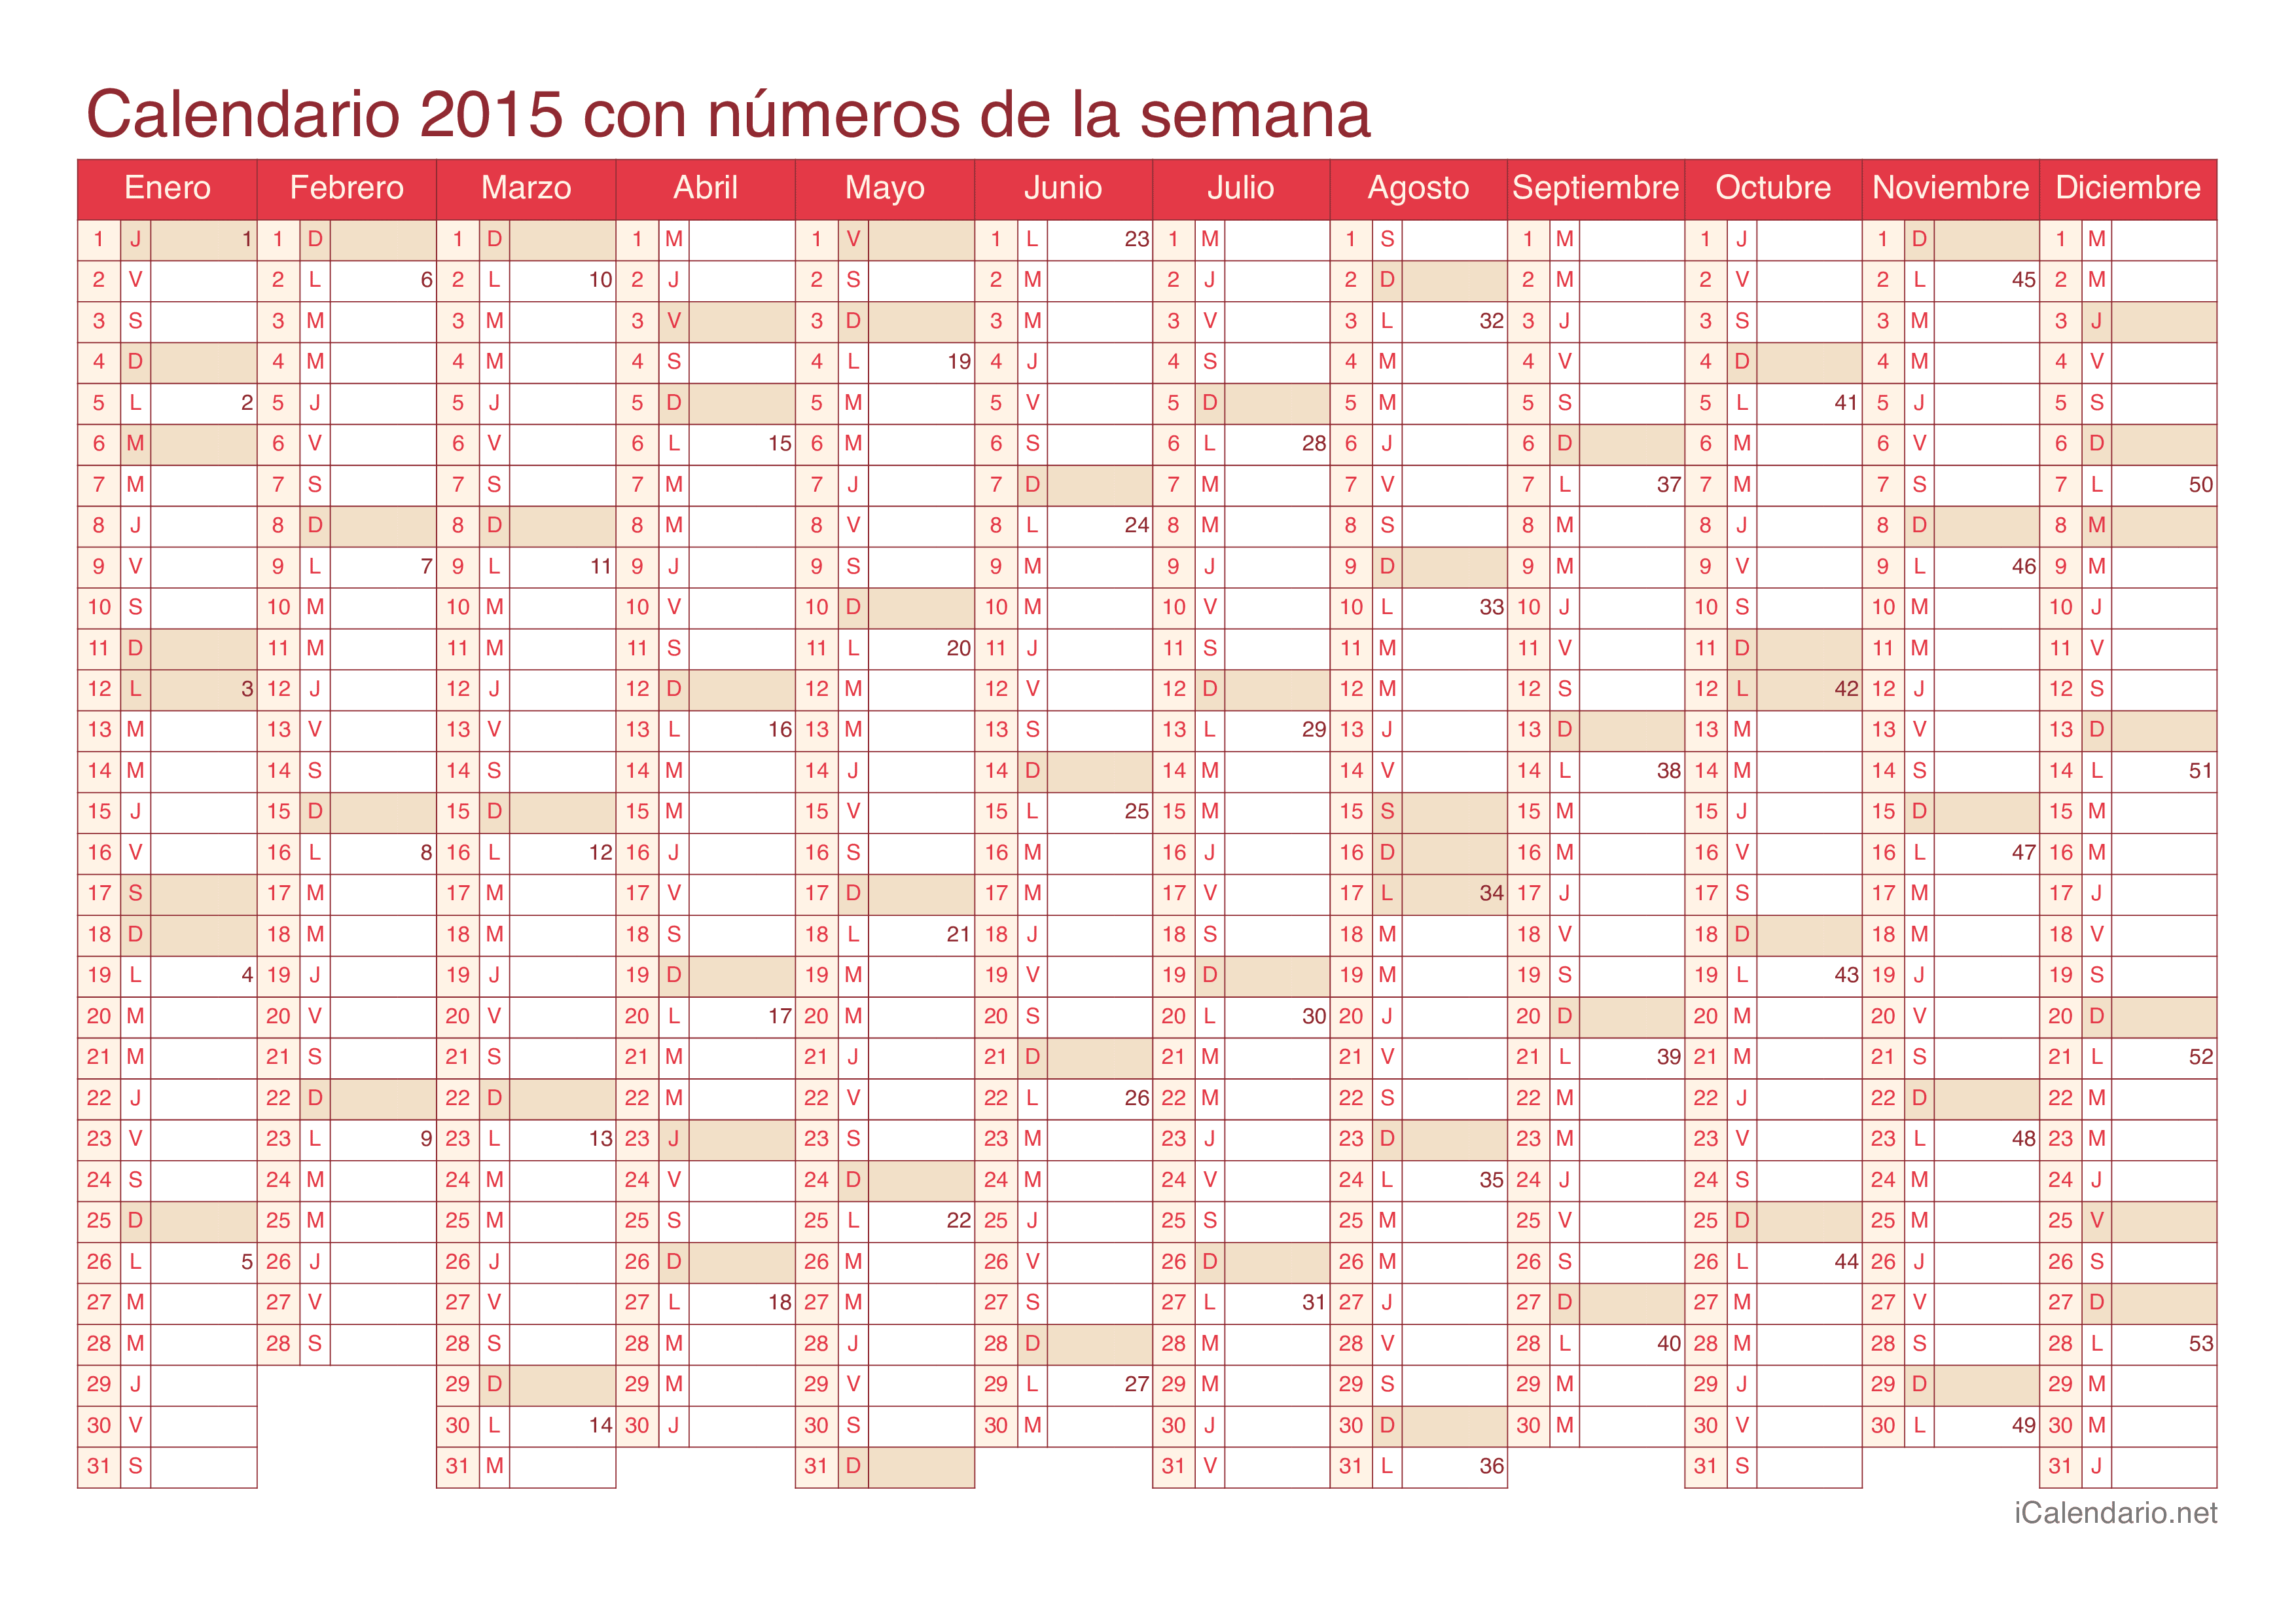 Calendario 2015 con números de semana - Cherry